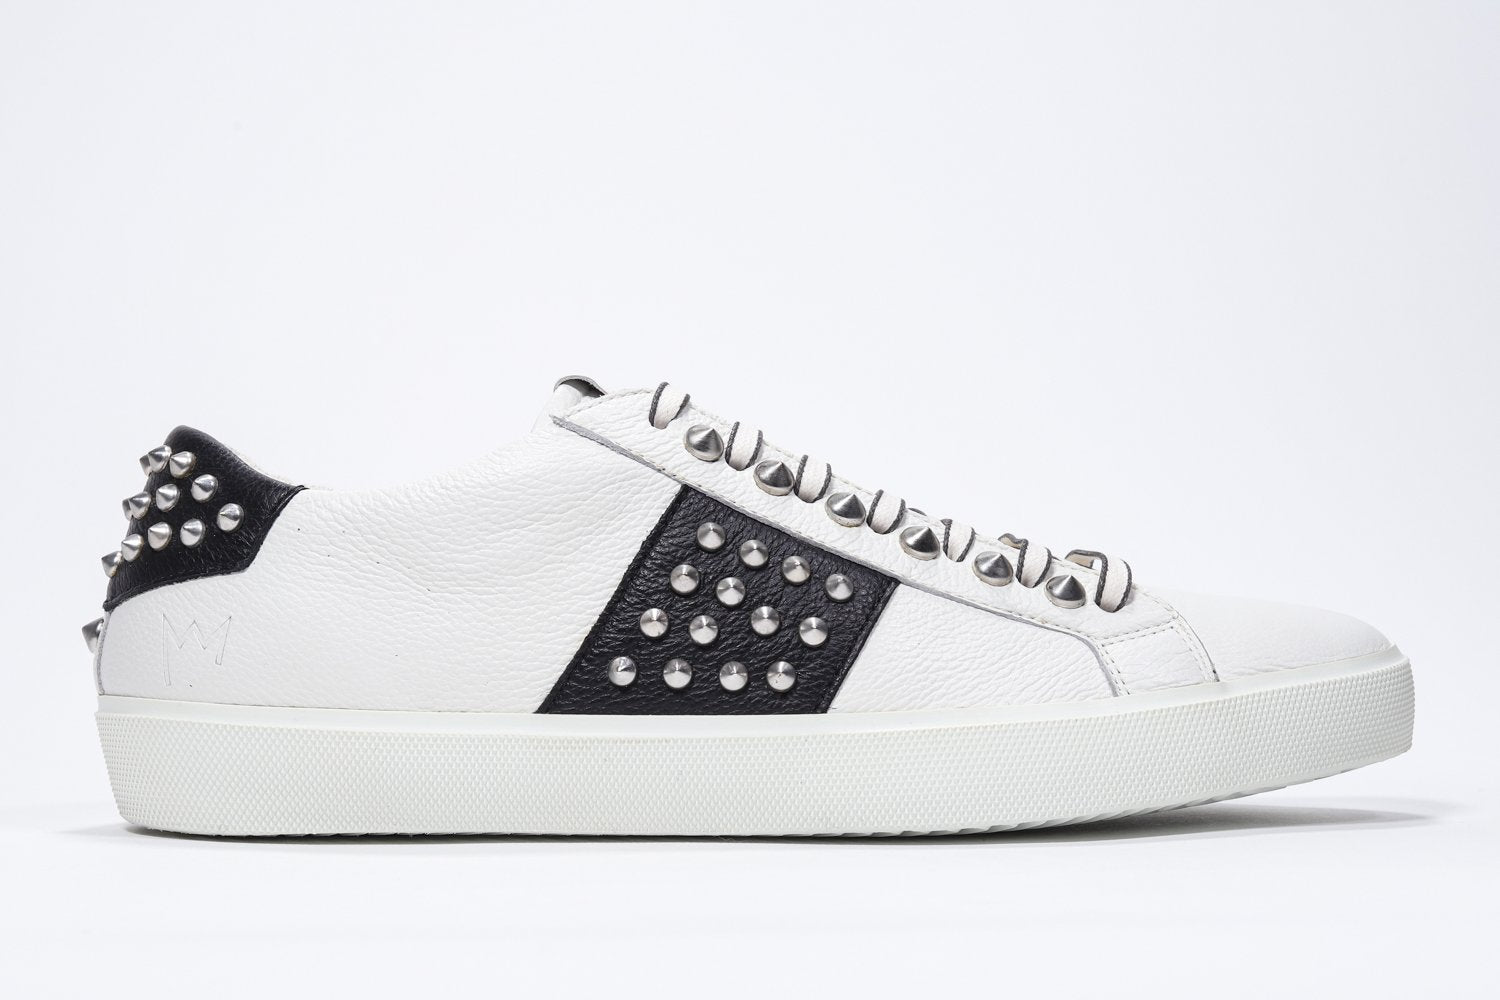 Profil latéral d'un bas blanc et noir sneaker. Tige en cuir avec clous et semelle en caoutchouc blanc.